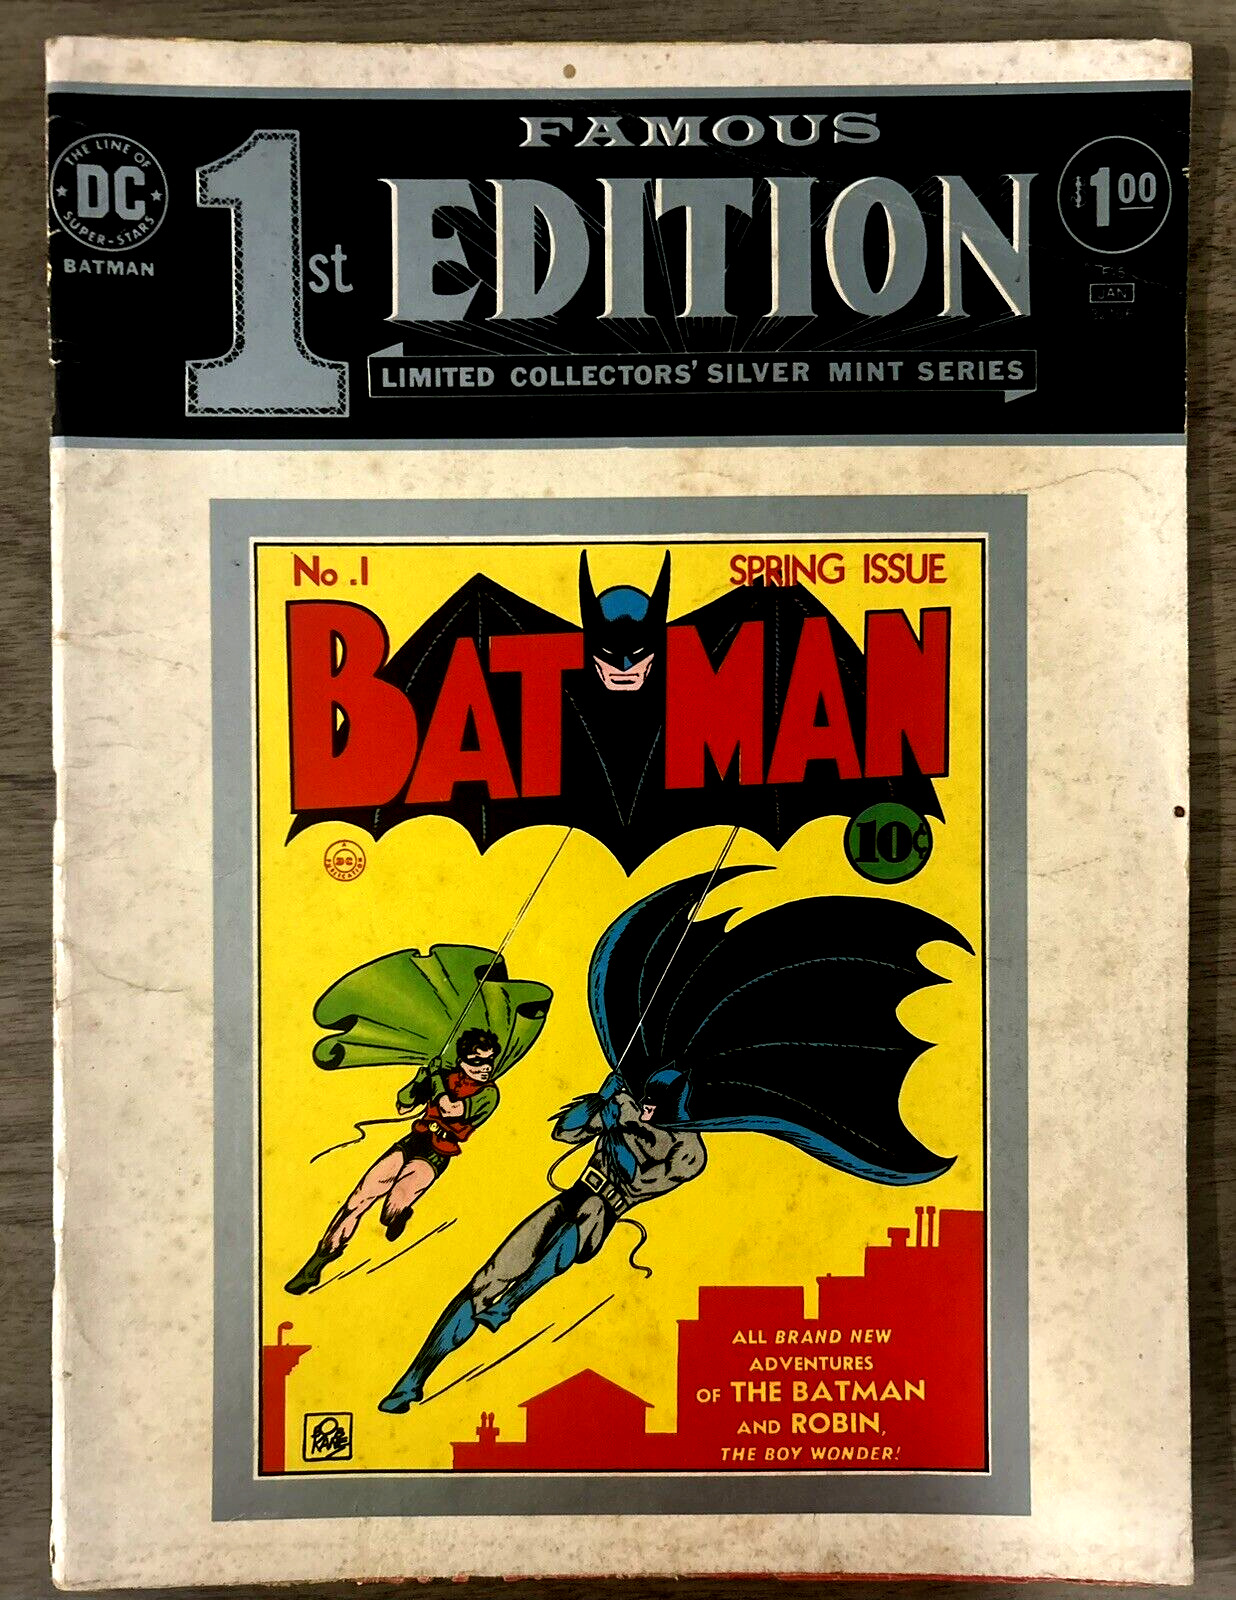 DC Famous-1st Edition Limited Collectors' Silver Mint Series 1975 BATMAN #1